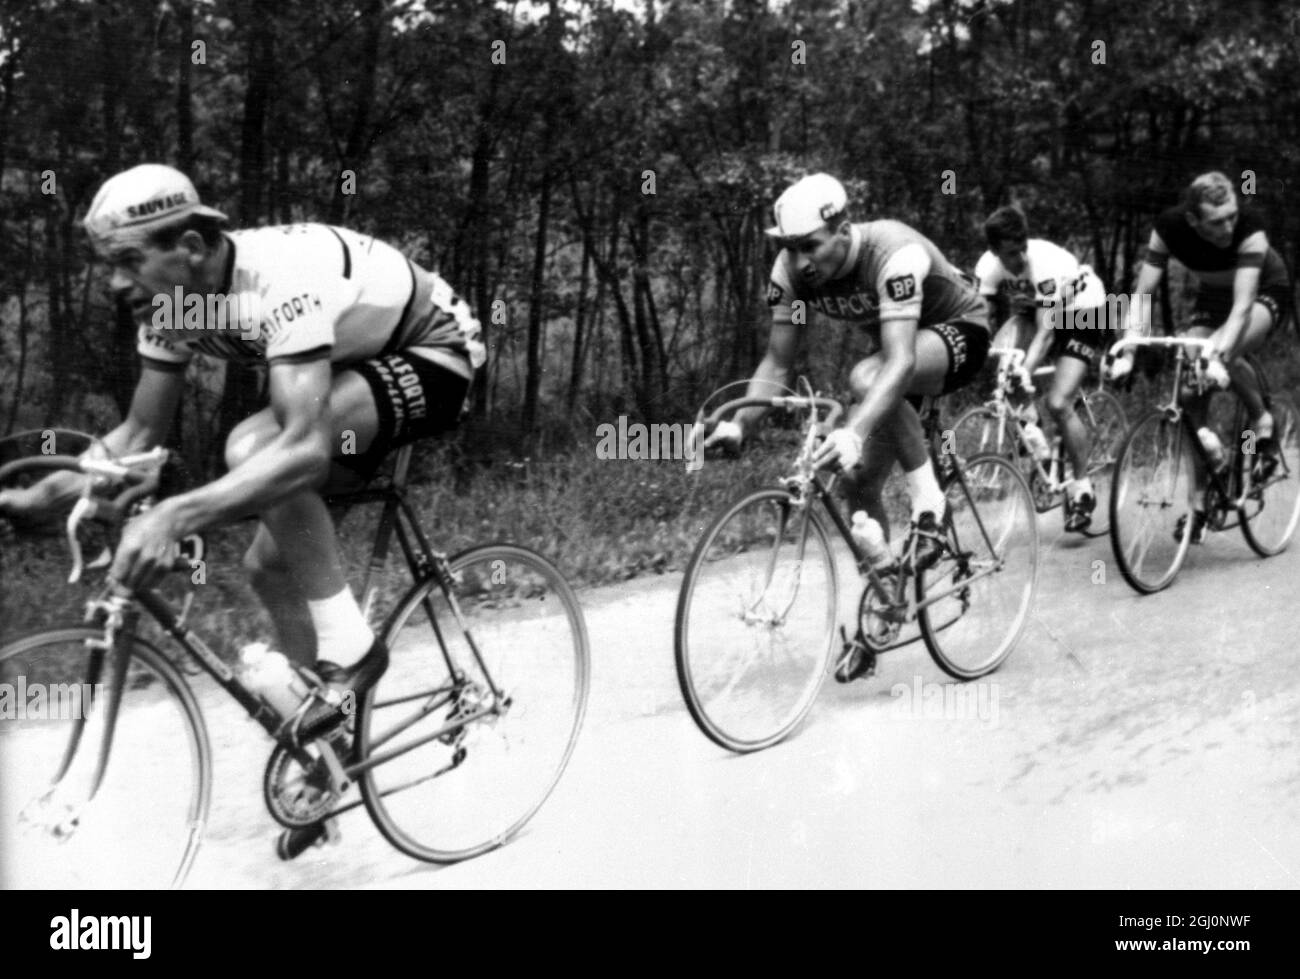 Nella prima metà del primo giro della gara ciclistica Tour de France sono raffigurati oggi LtoR Andre Foucher - Francia ; Raymond Poulidor - Francia ; Tommy Simpson - Gran Bretagna e Edward Sels - Belgio . Liege , Belgio 22 giugno 1965 Foto Stock